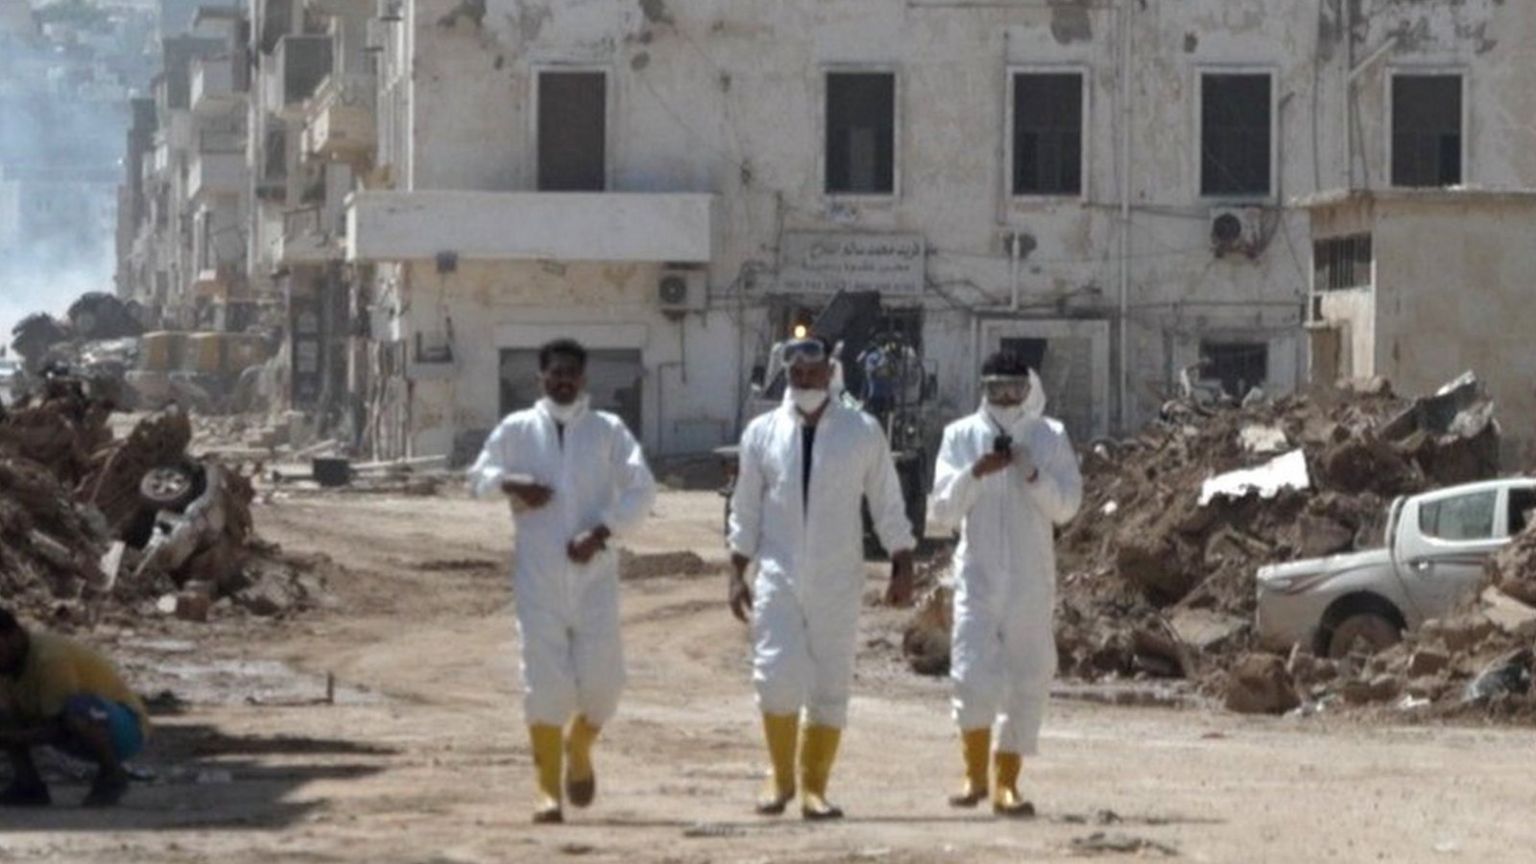 Men in hazmat suits walking through Derna